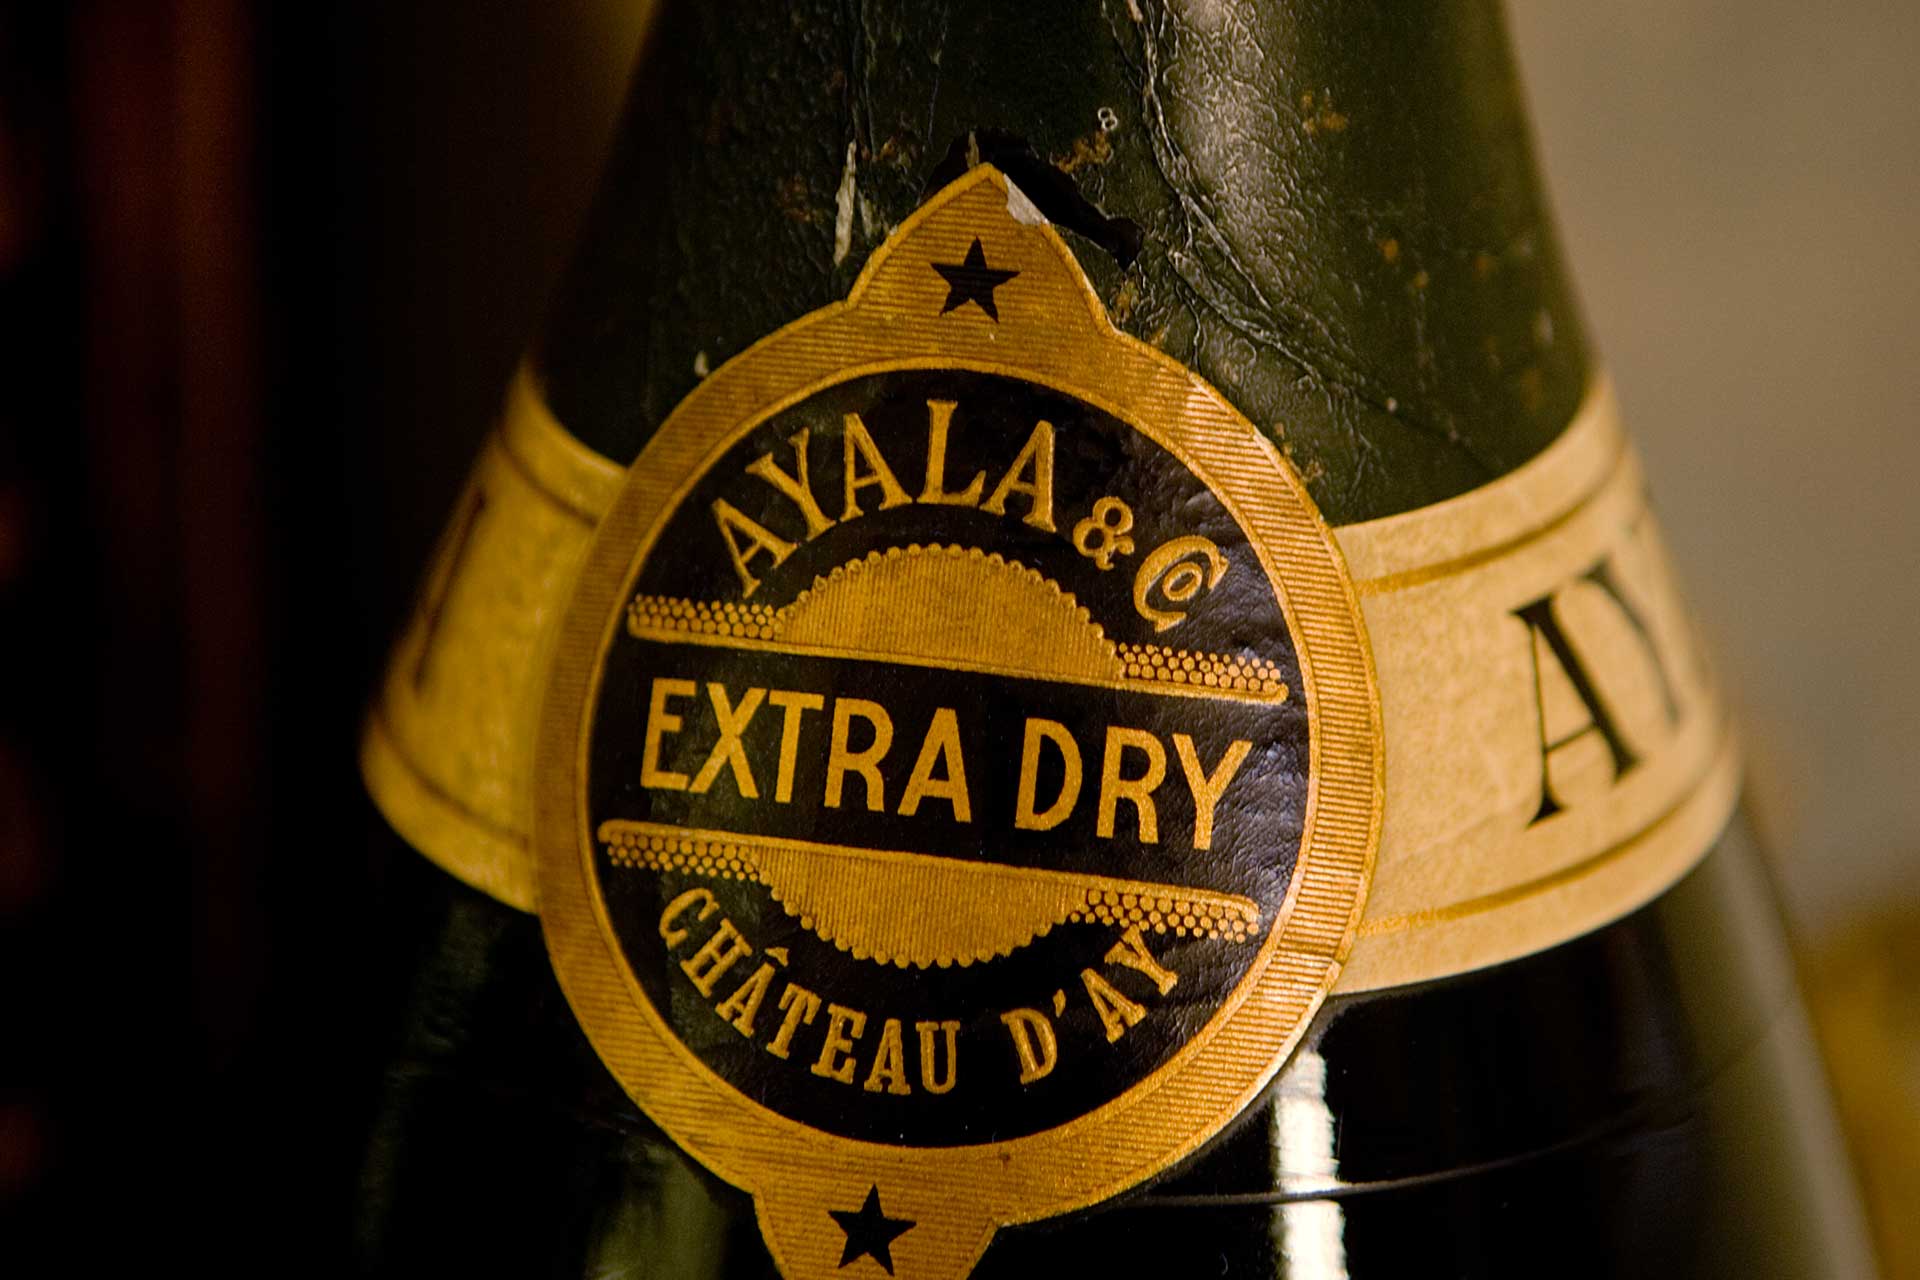 Ayala Histoire du Champagne